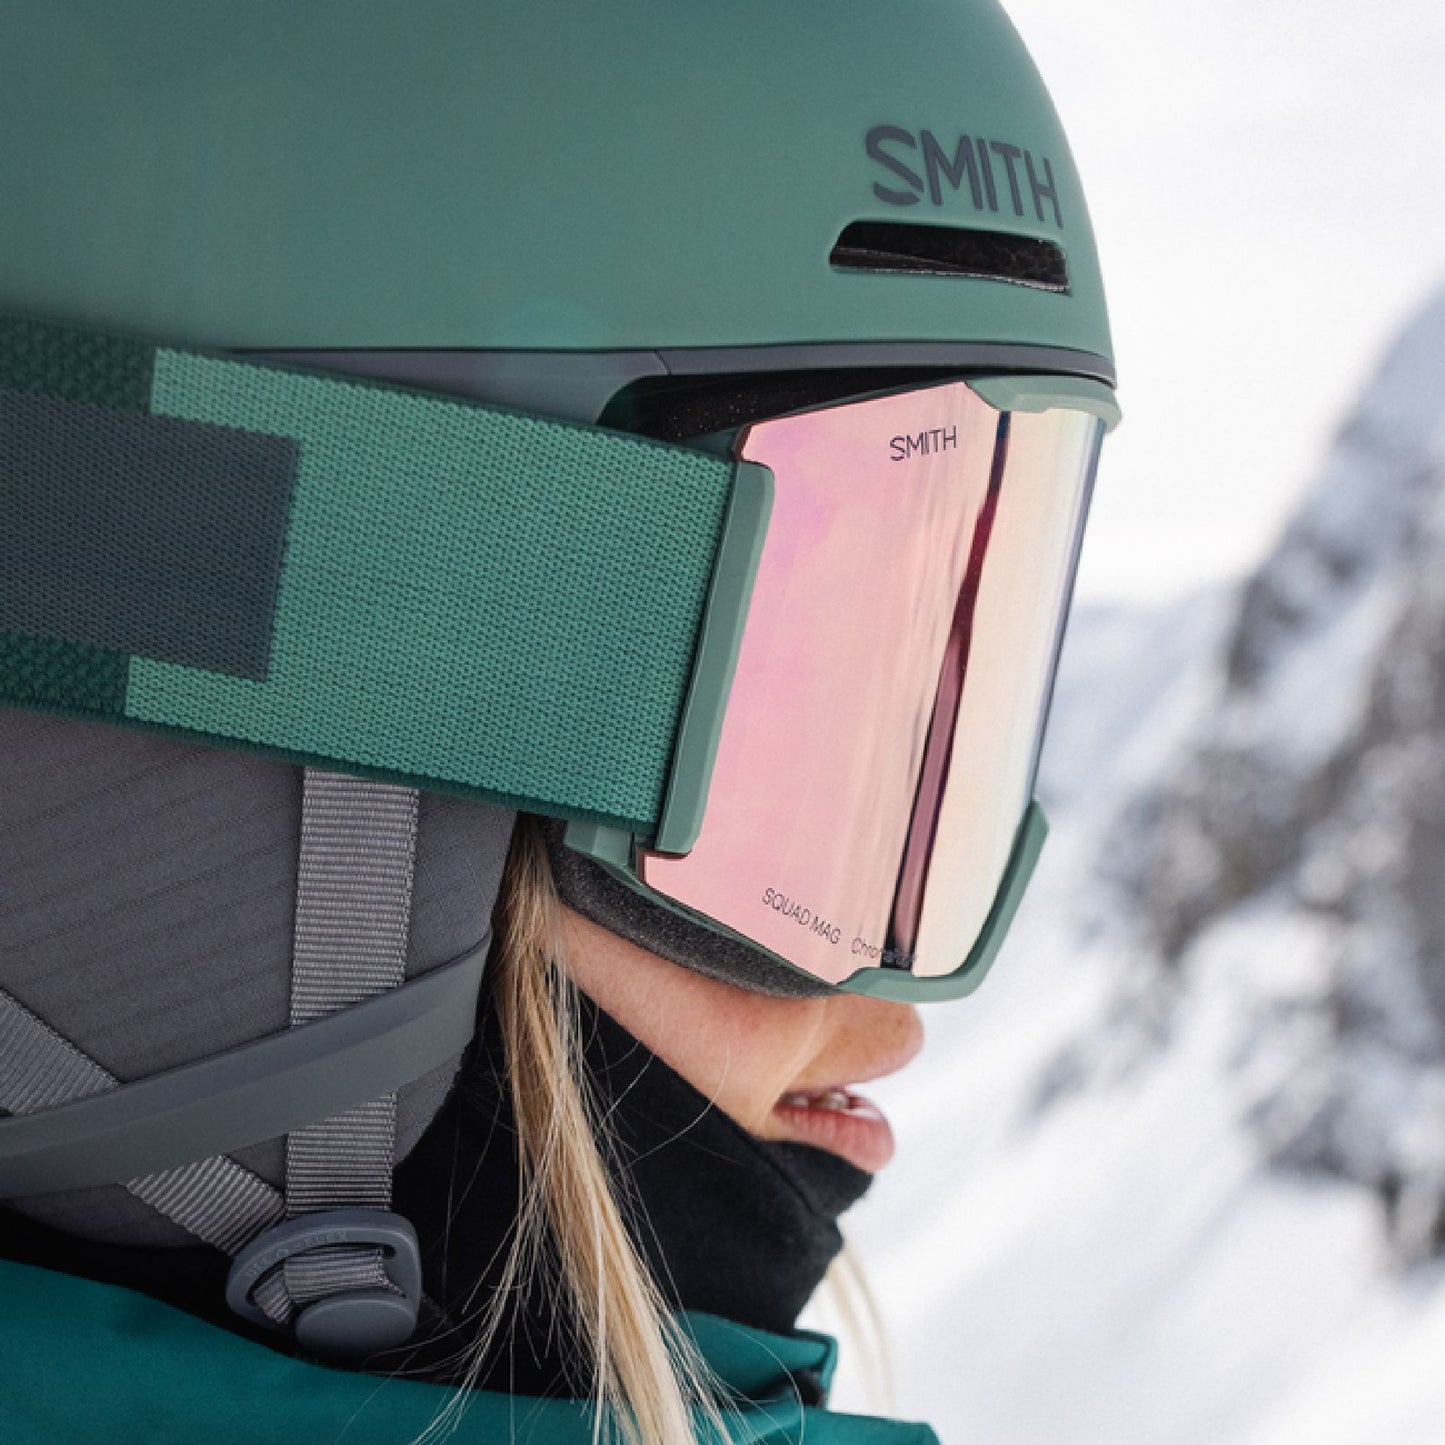 Smith Code MIPS Snow Helmet Matte Alpine Green Snow Helmets